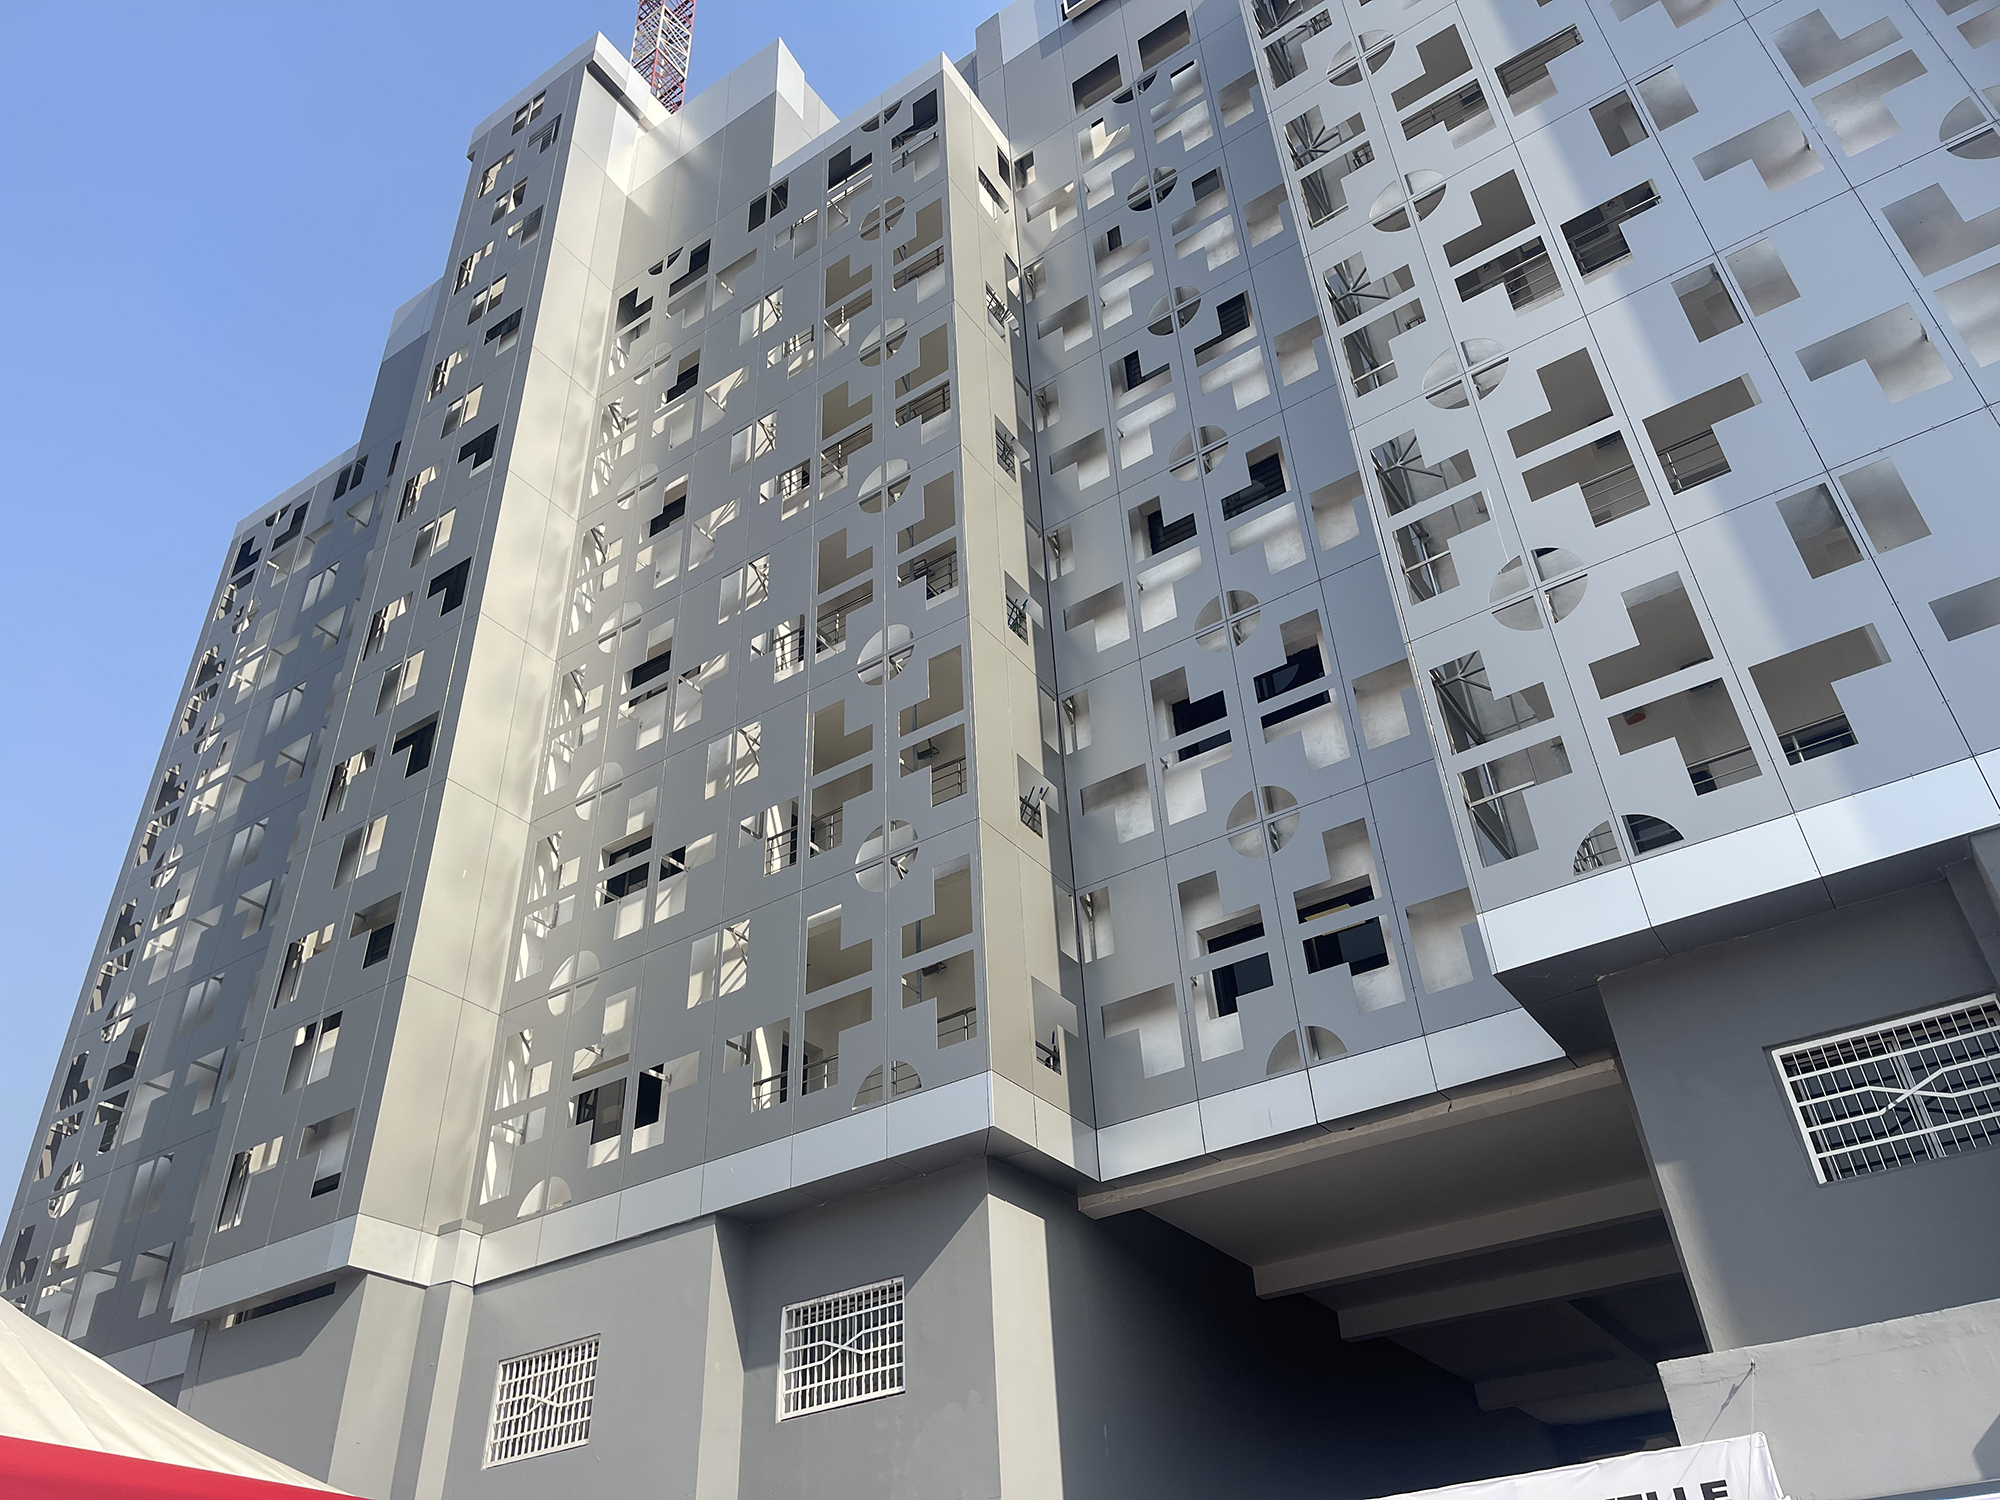 Siège de la SGBG - Cabinet d'architecture, Malick Mbow - Archi Concept International - Dakar, Sénégal